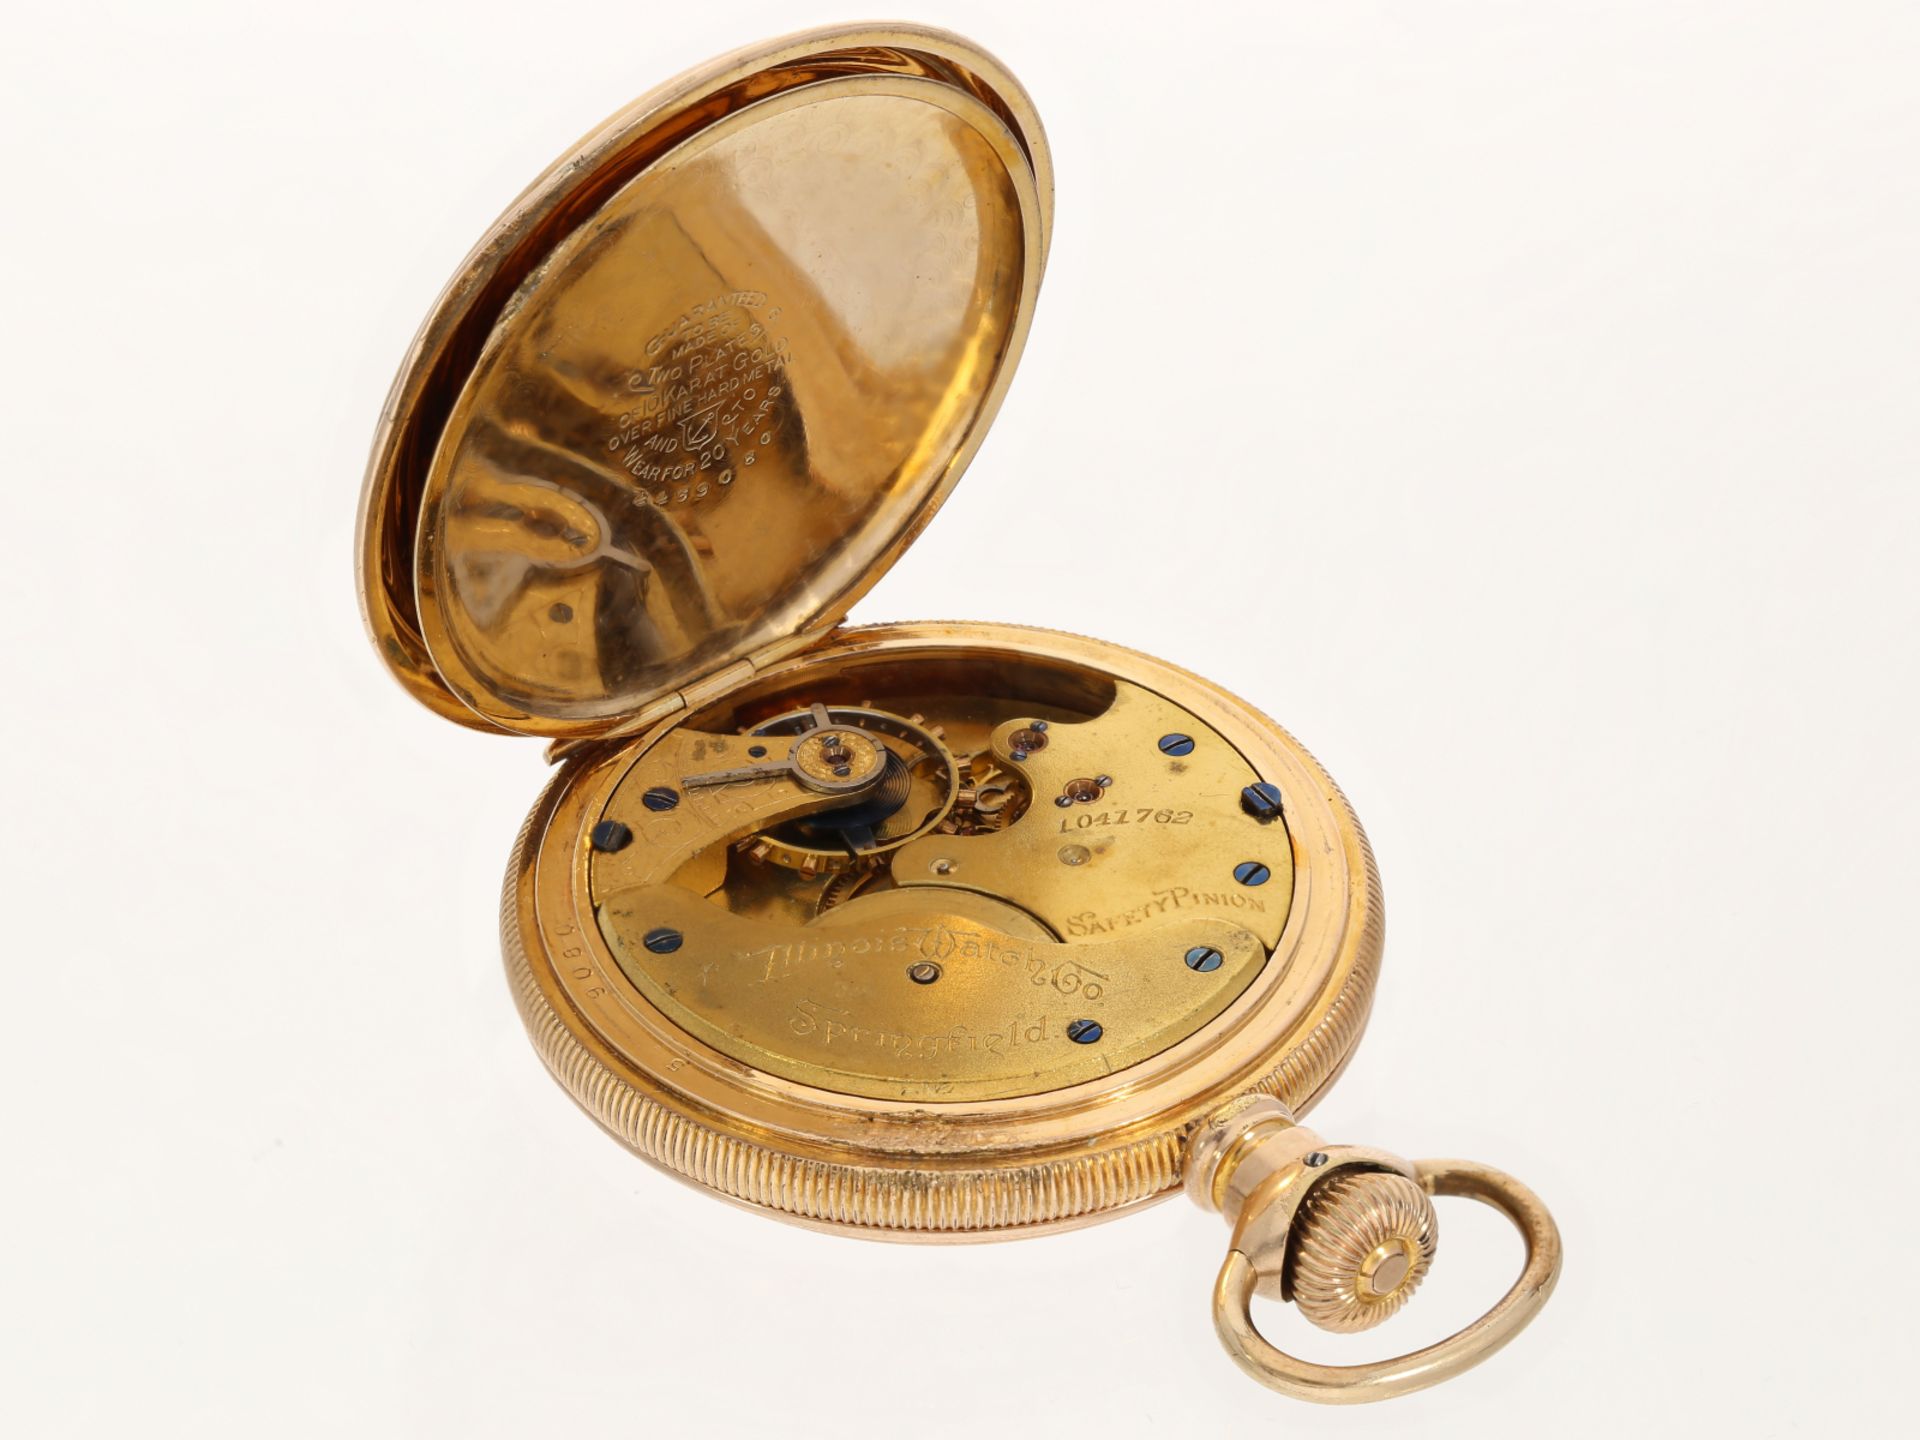 Dekorative amerikanische Taschenuhr "Illinois Watch" vergoldet - Bild 5 aus 6